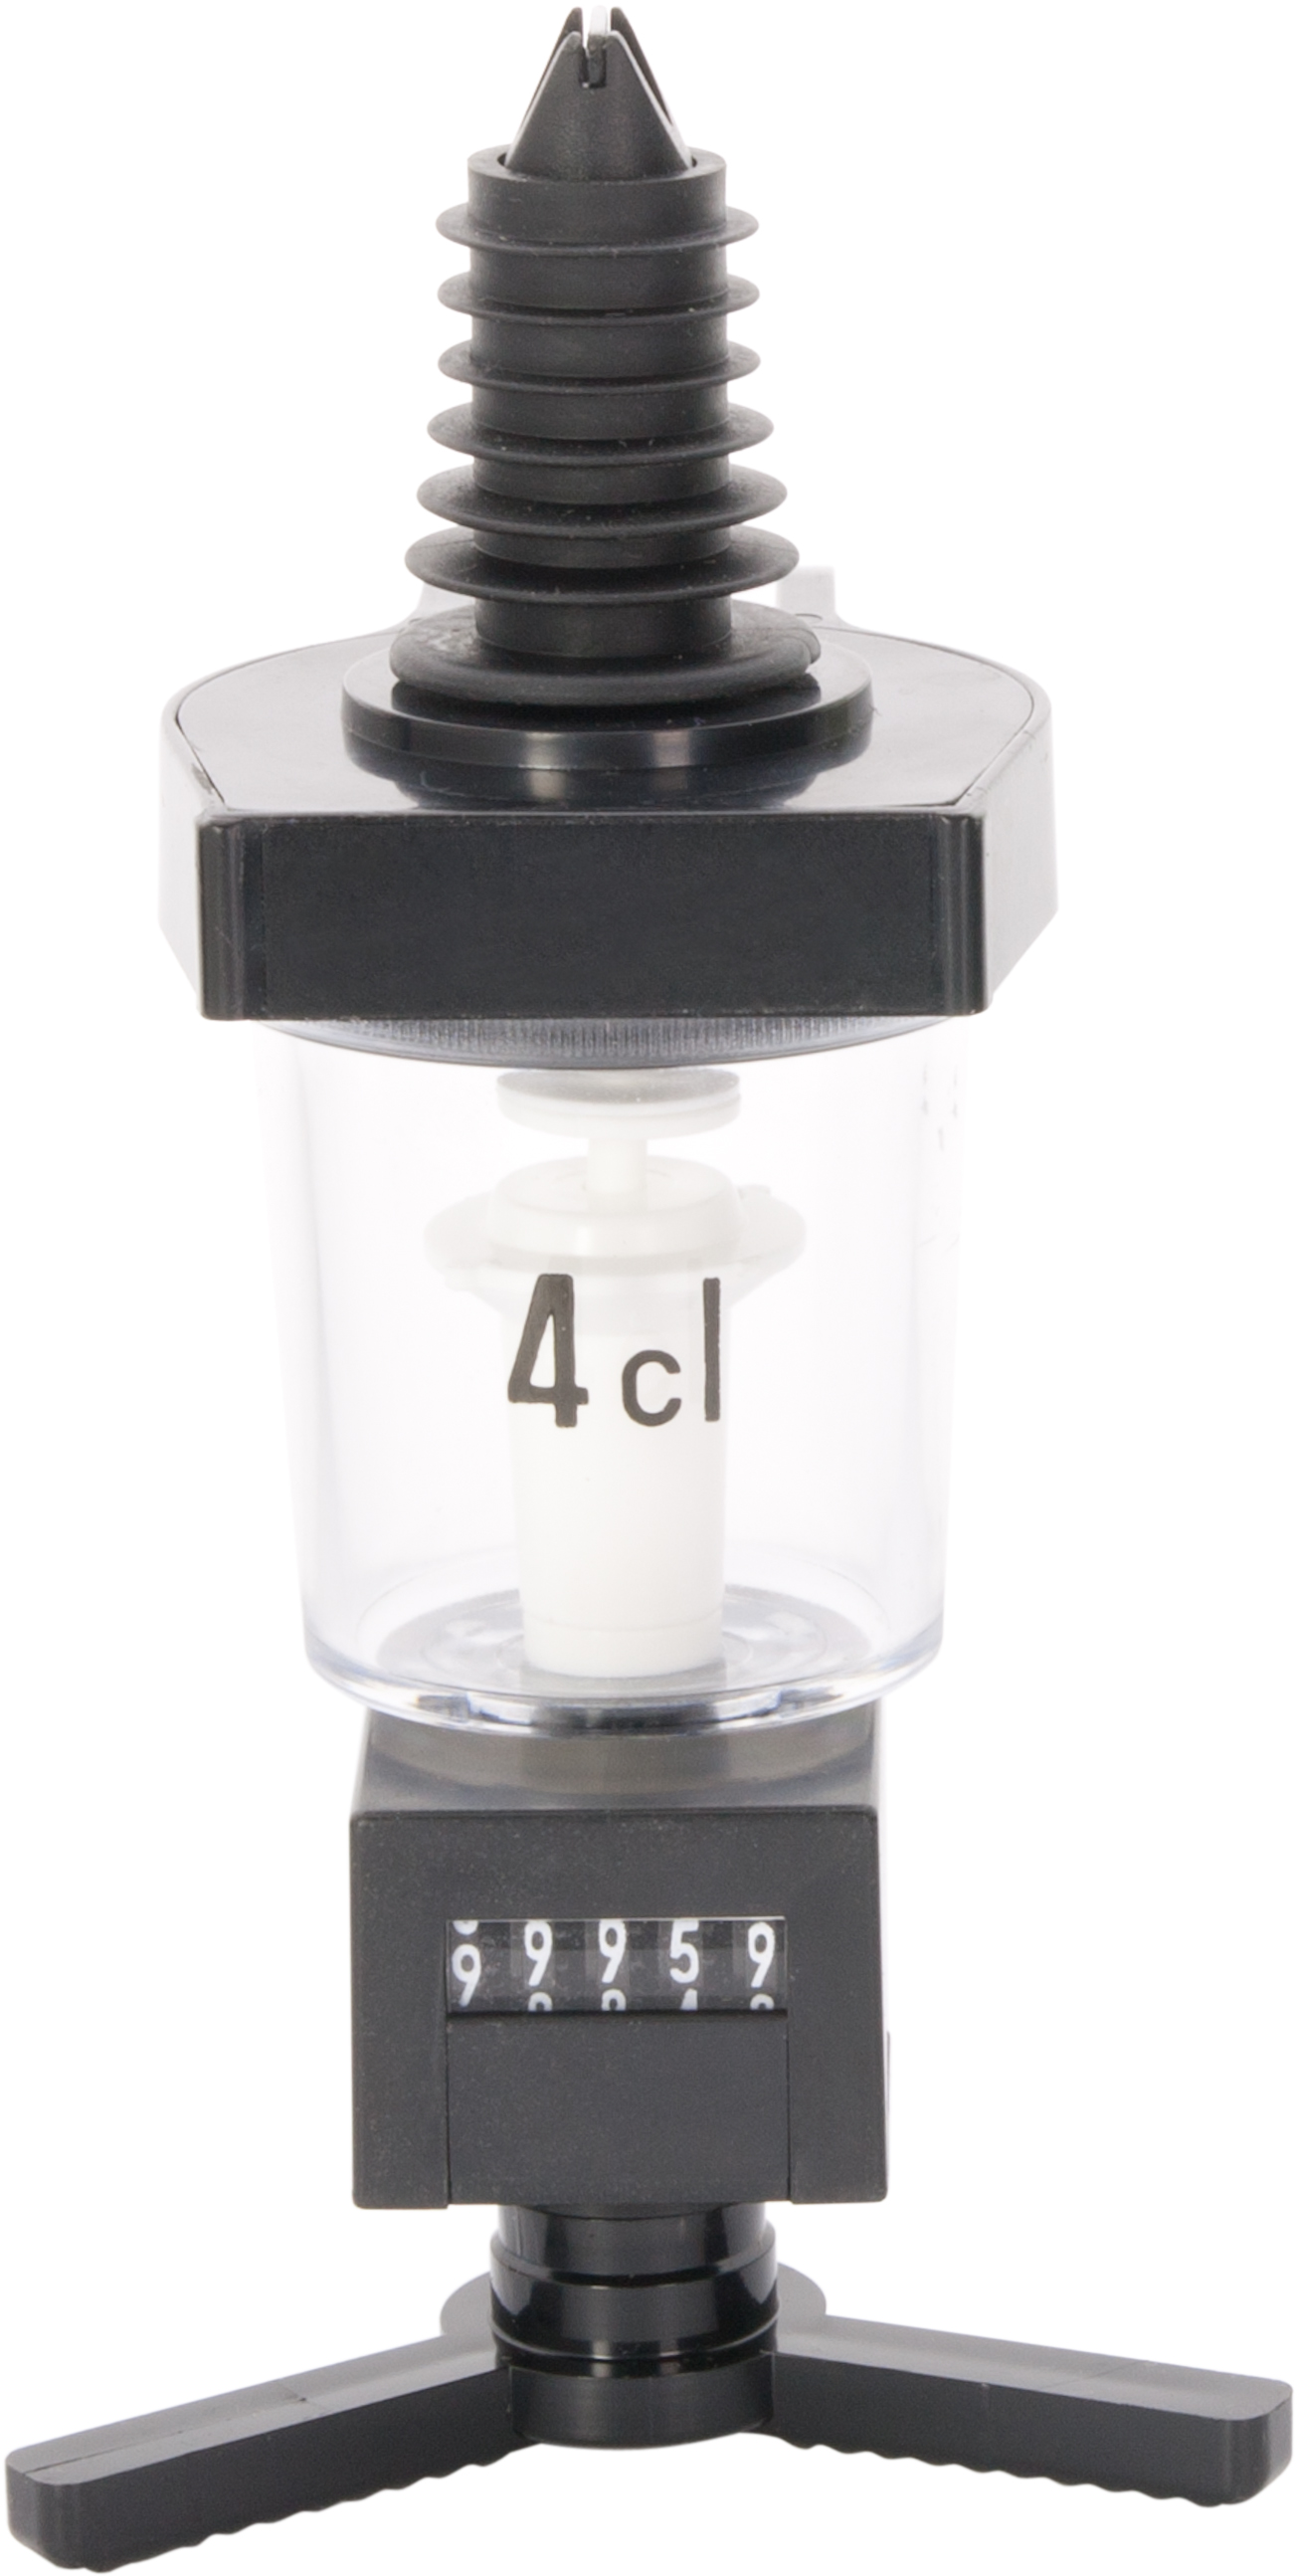 Dosierer mit Zählwerk mittig, Kunststoff (0,7l - 1,0l) - 5cl